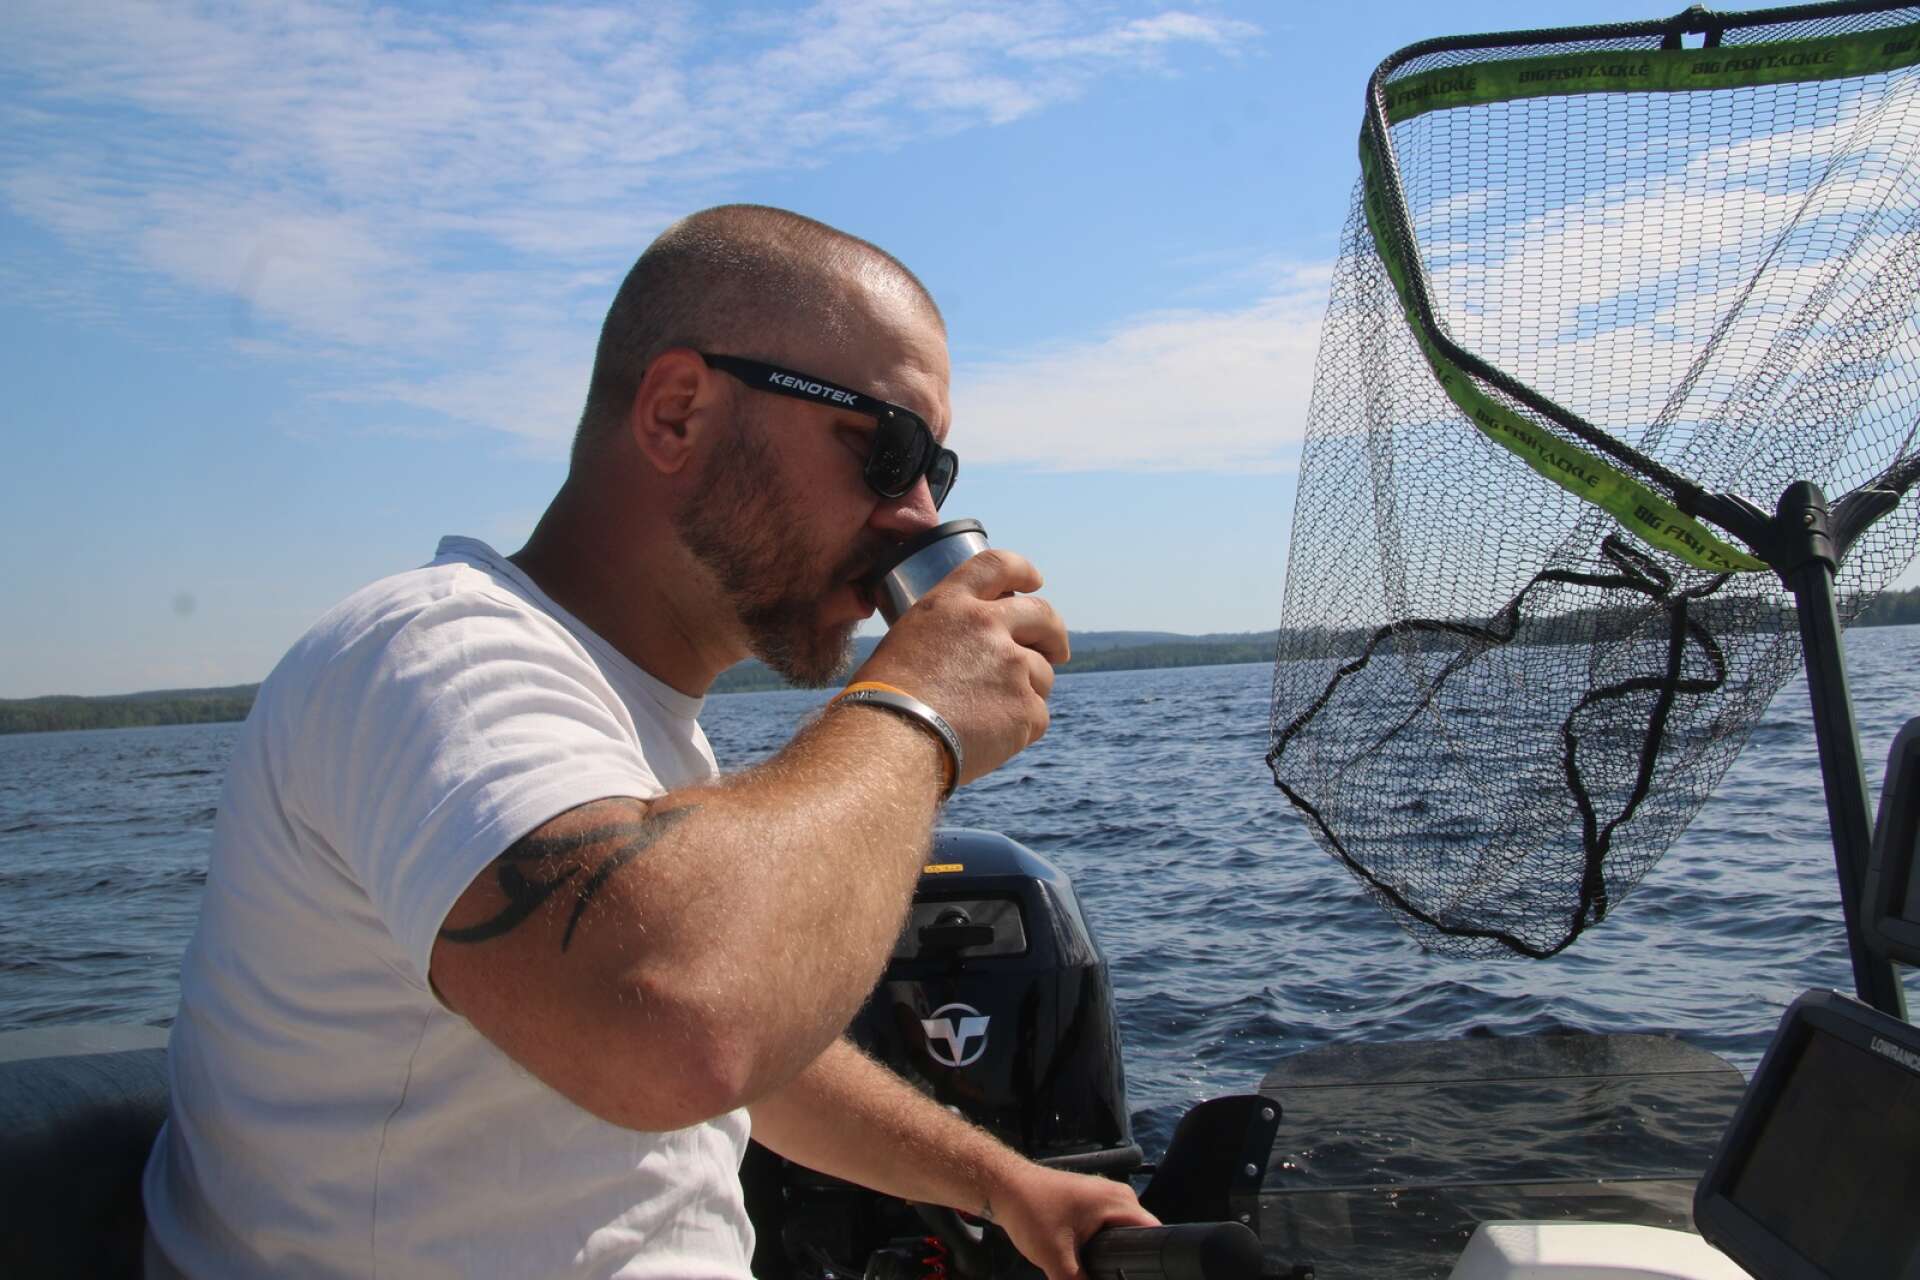 Om fisken inte skulle vara superintresserad av att nappa för stunden brukar Pierre Göransson ta till ett knep. Han försöker då att njuta av en kopp kaffe - för när han gör det brukar fisken ofta ställa sig precis under båten, enligt ekolodet.